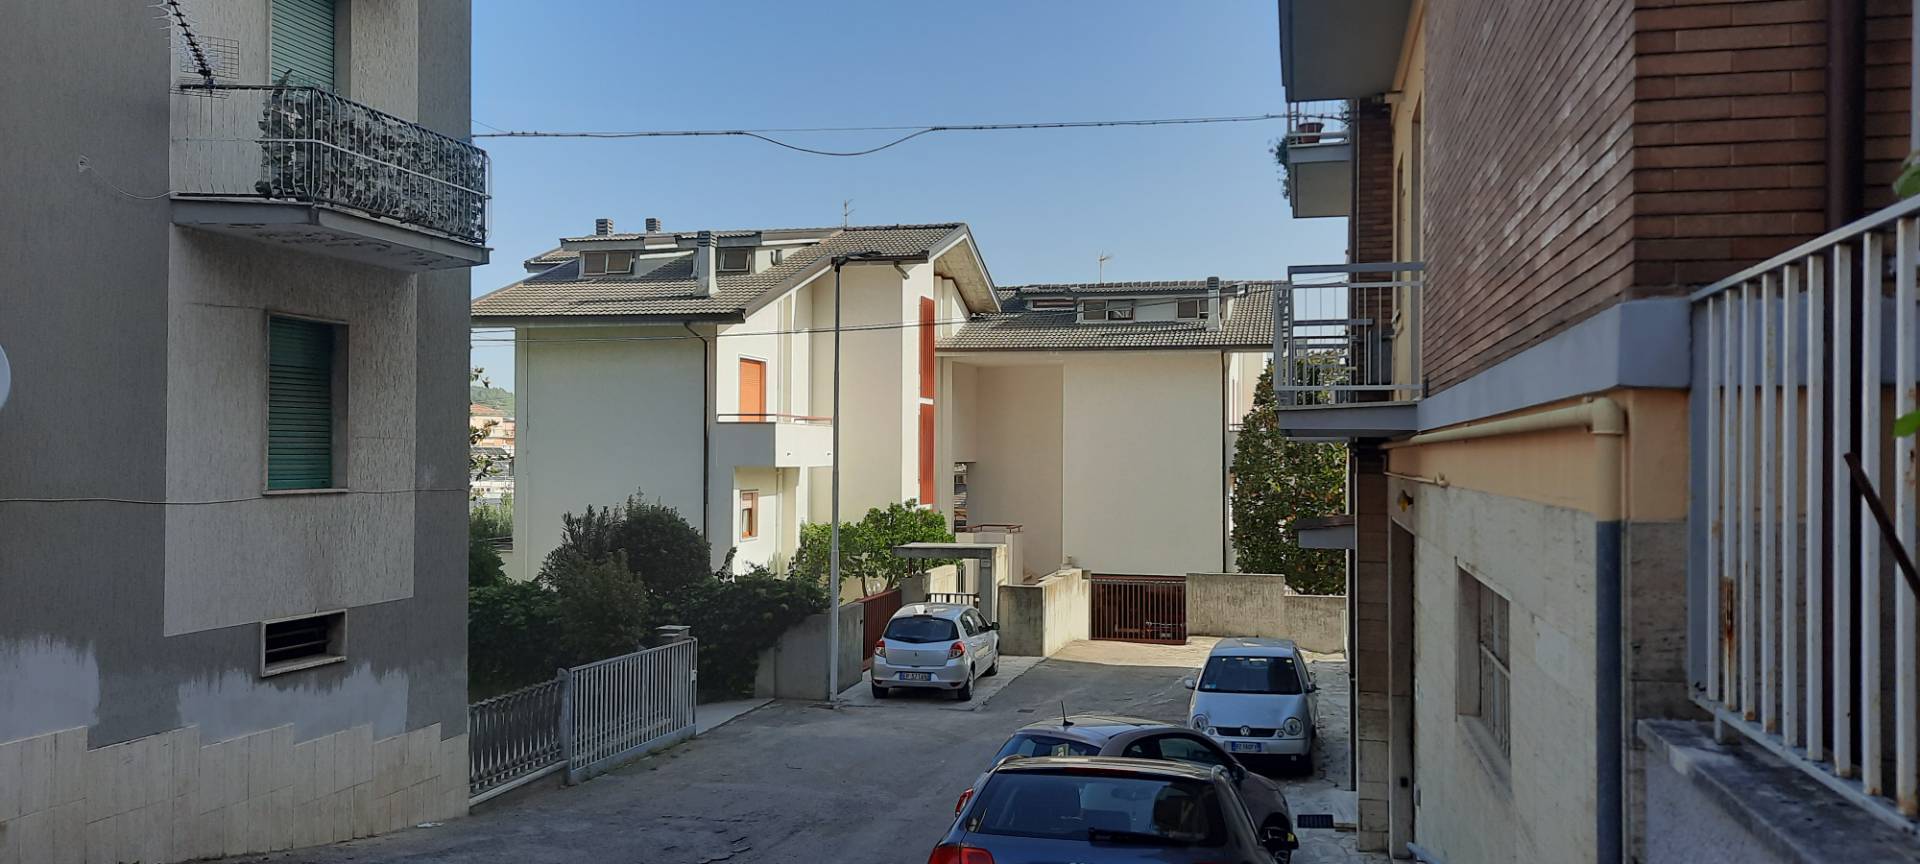 Villa in vendita a Ascoli Piceno, 20 locali, zona Località: PortaMaggiore, prezzo € 450.000 | PortaleAgenzieImmobiliari.it